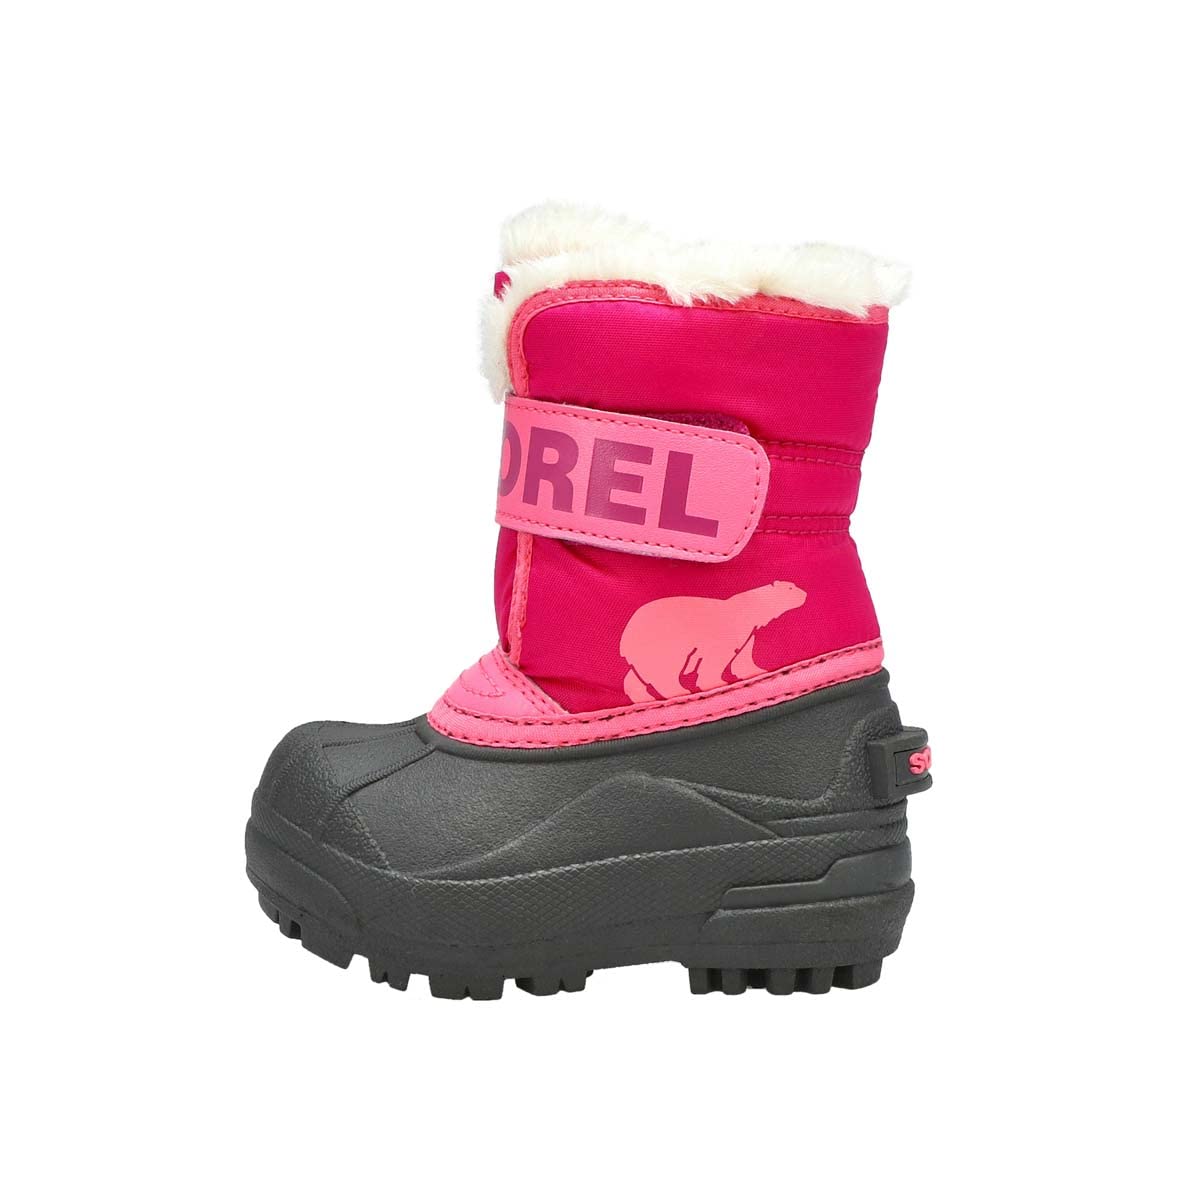 Sorel KIDS SNOW COMMANDER Schneestiefel für Unisex Kinder, Rot (Tropic Pink x Deep Blush) - Toddler, 23 EU